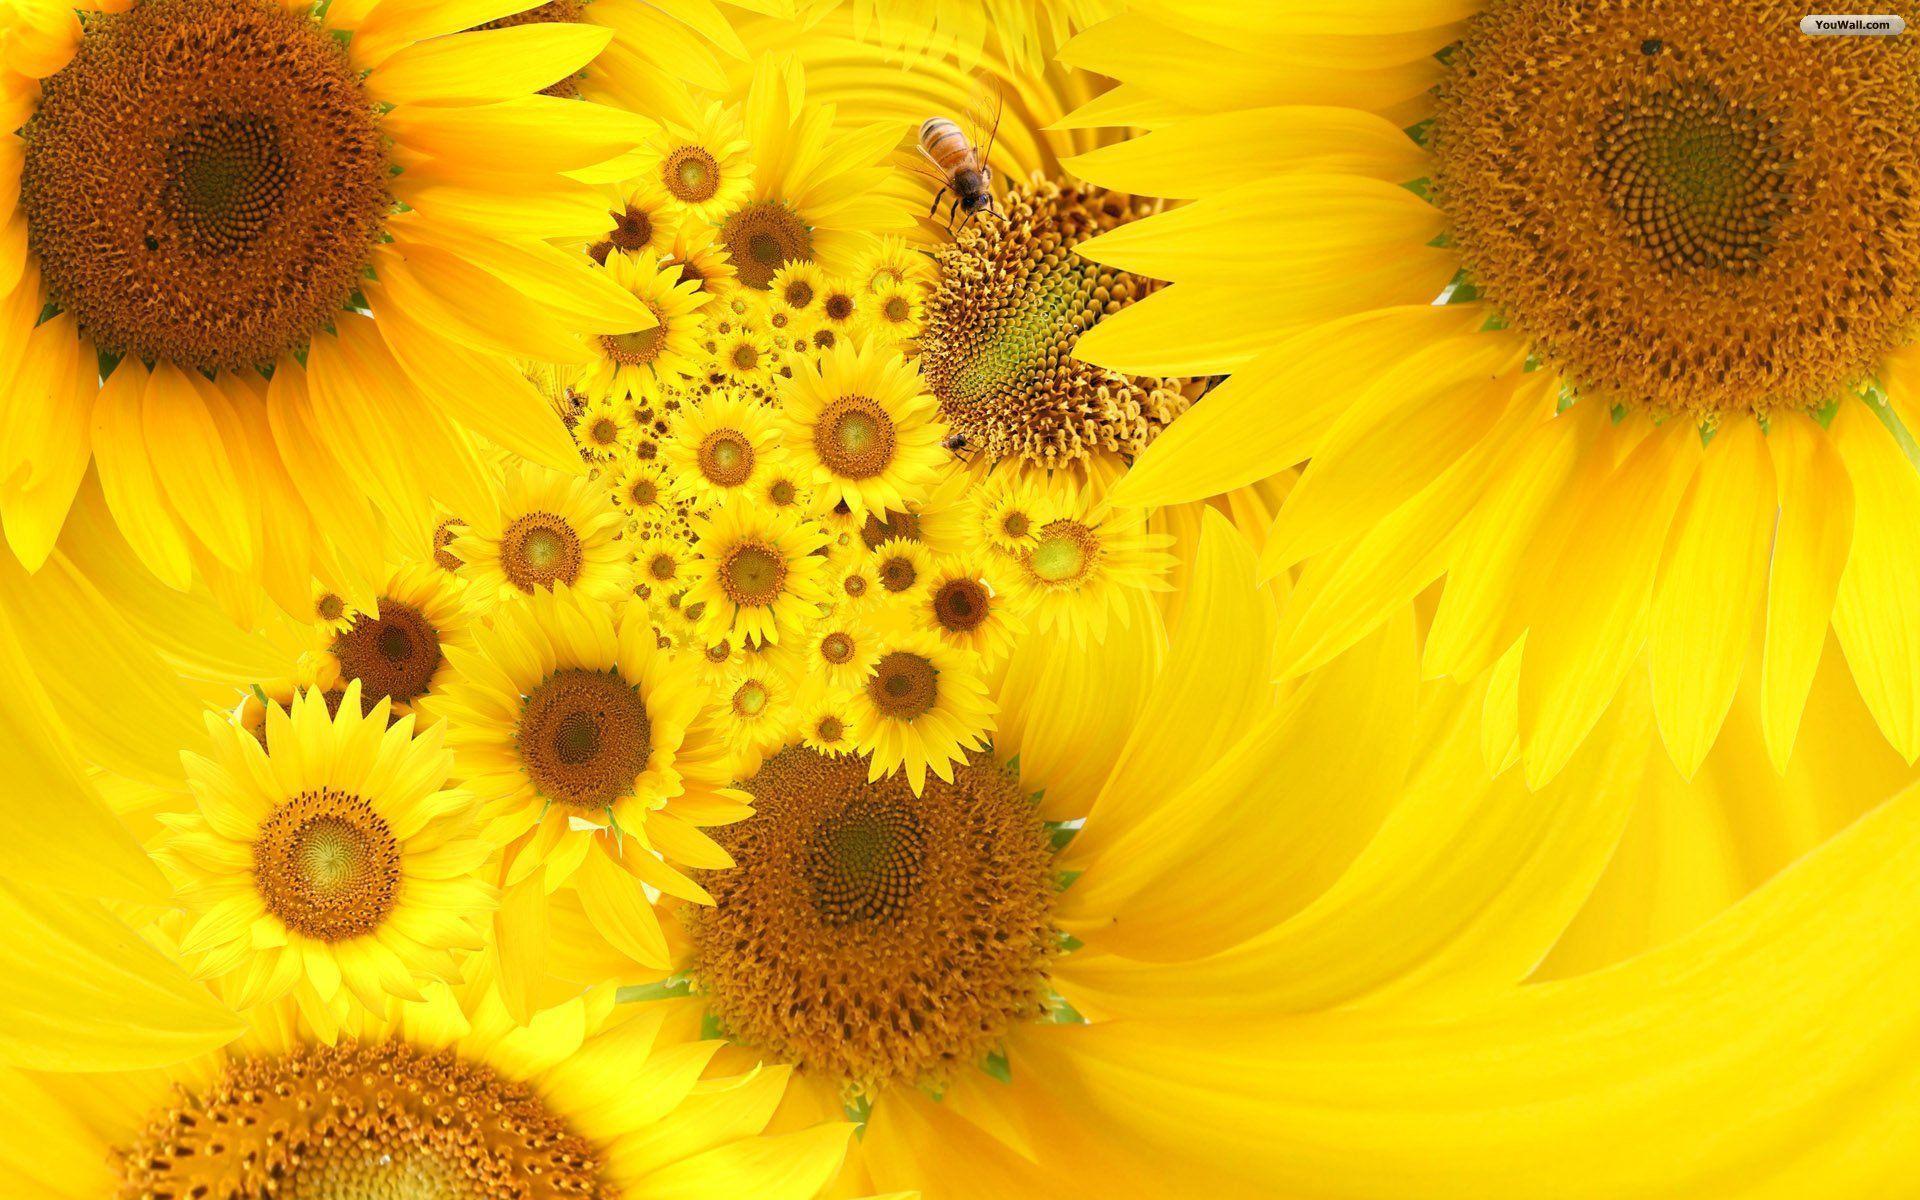 Thưởng thức những hình nền hoa hướng dương đẹp nhất trên trang trí điện thoại của bạn. Với màu vàng tươi sáng và những bông hoa rực rỡ, các hình nền sẽ đưa bạn tới những cánh đồng thơ mộng với tiếng gió đưa hoa thơm ngát, tạo nên không gian êm dịu và hoà bình.